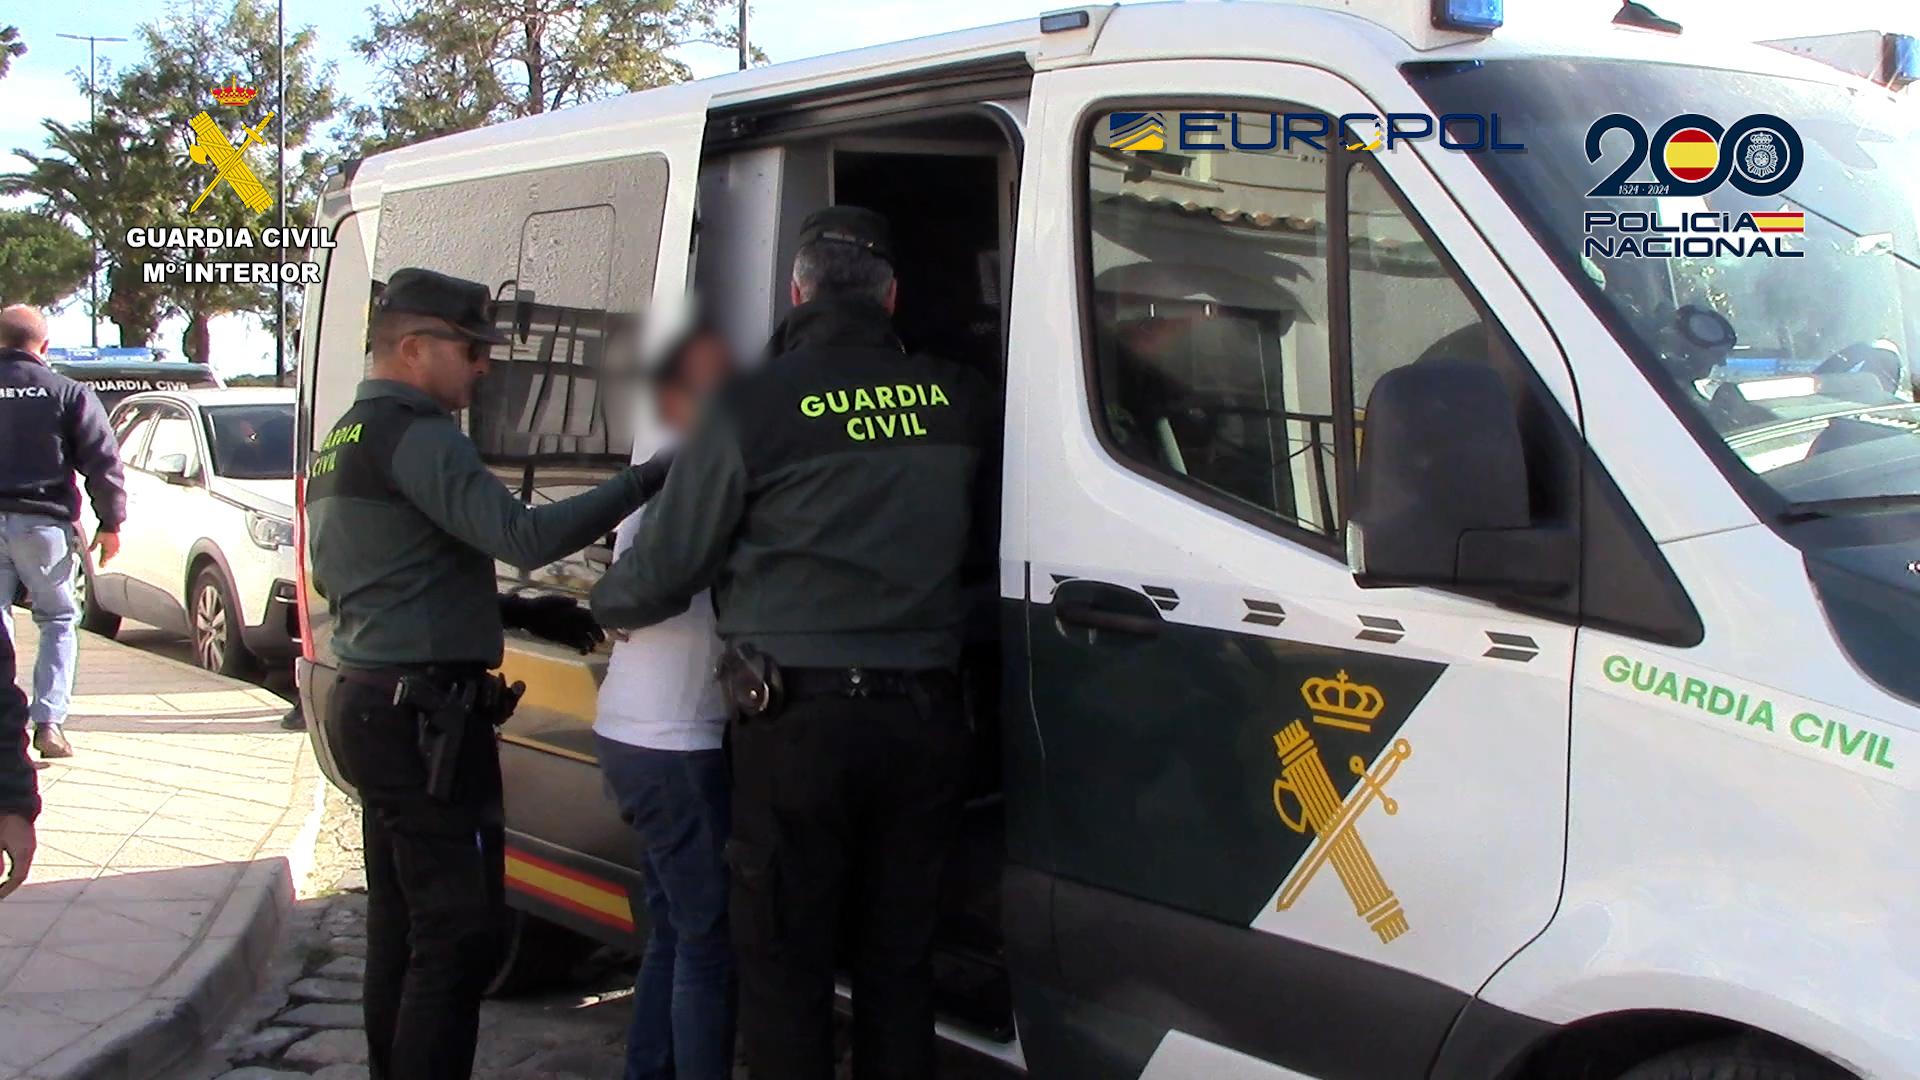 Agentes de la Guardia Civil trasladan a uno de los detenidos al vehículo policial